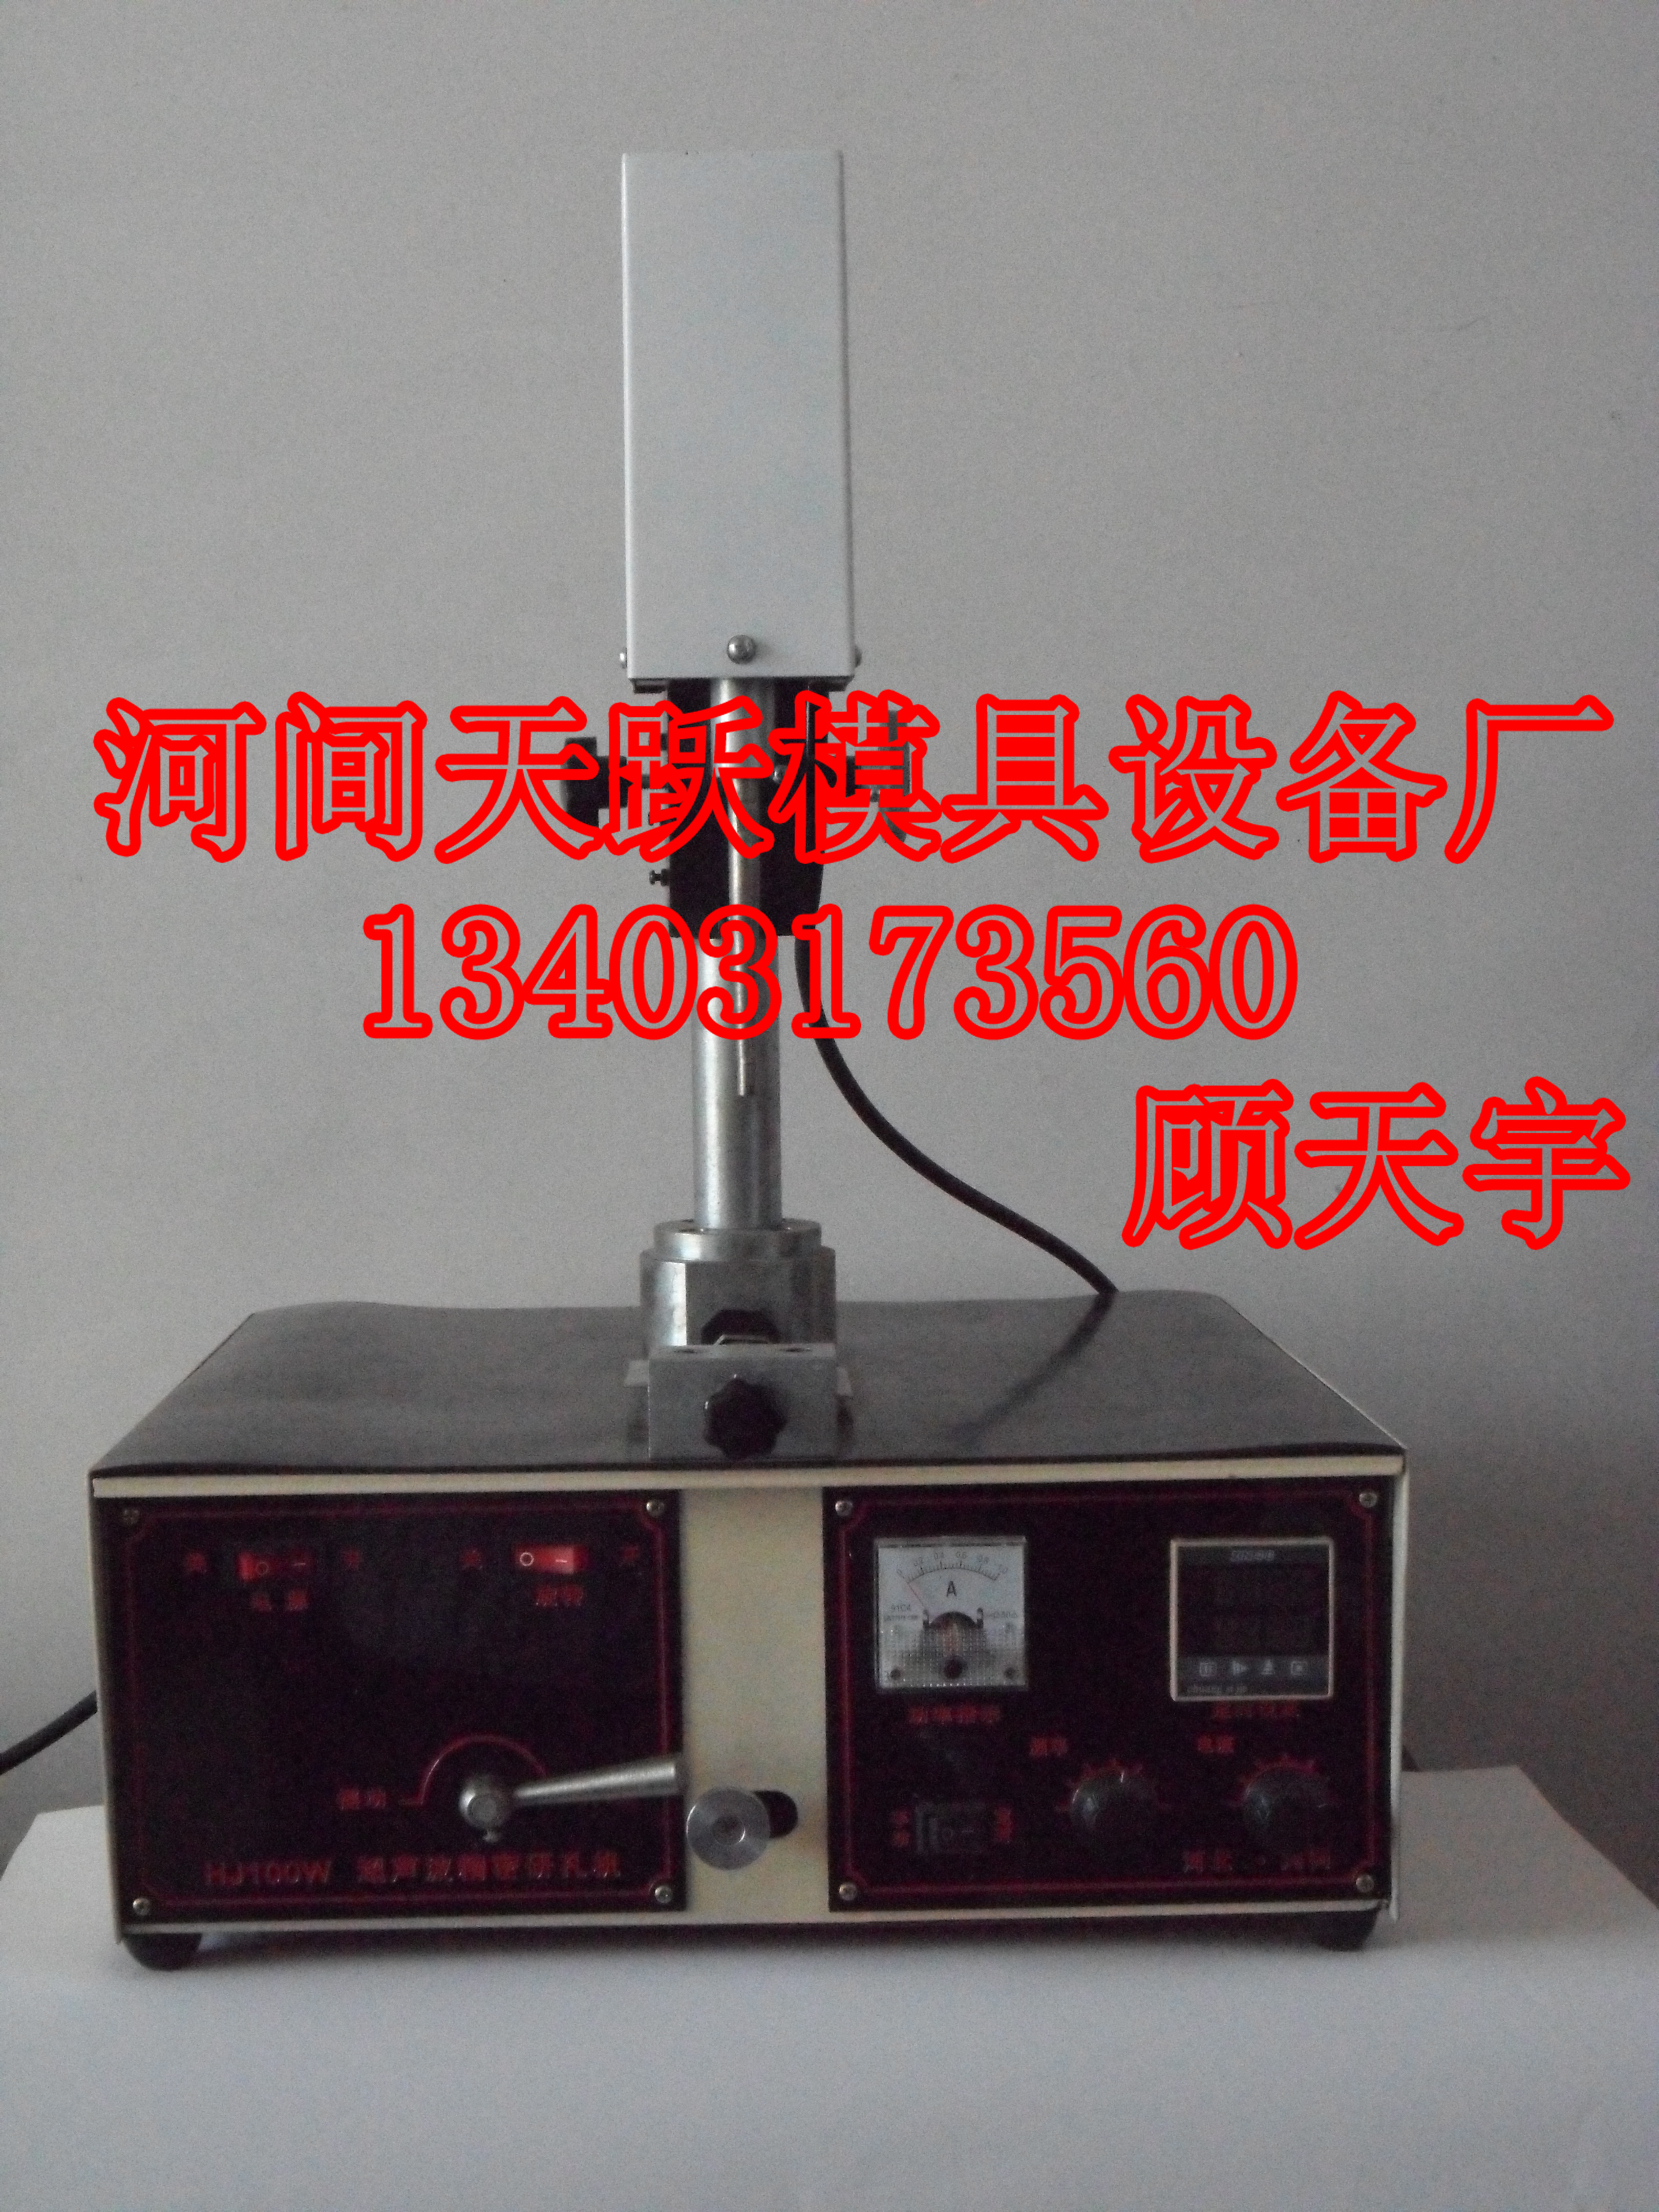 供应TY-200型超声波研磨机 TY-200型超声波研磨机图片